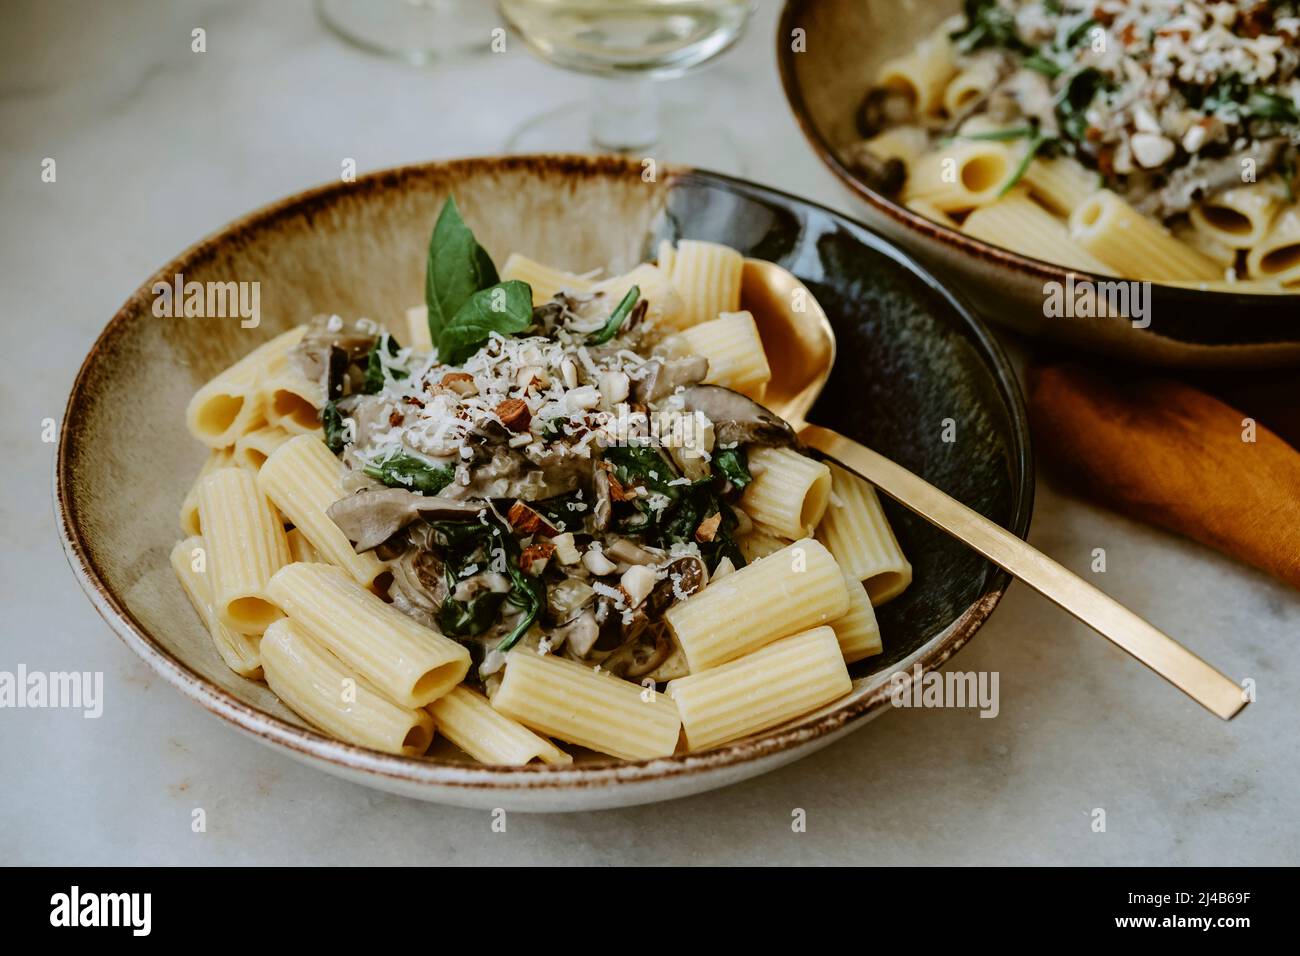 Rigatoni Nudelgericht, mit Creme, Pilz, Spinat, Mandel und geriebenem Parmesan, in handgefertigten Tellern und einem Glas Weißwein, auf einem Marmortisch Stockfoto